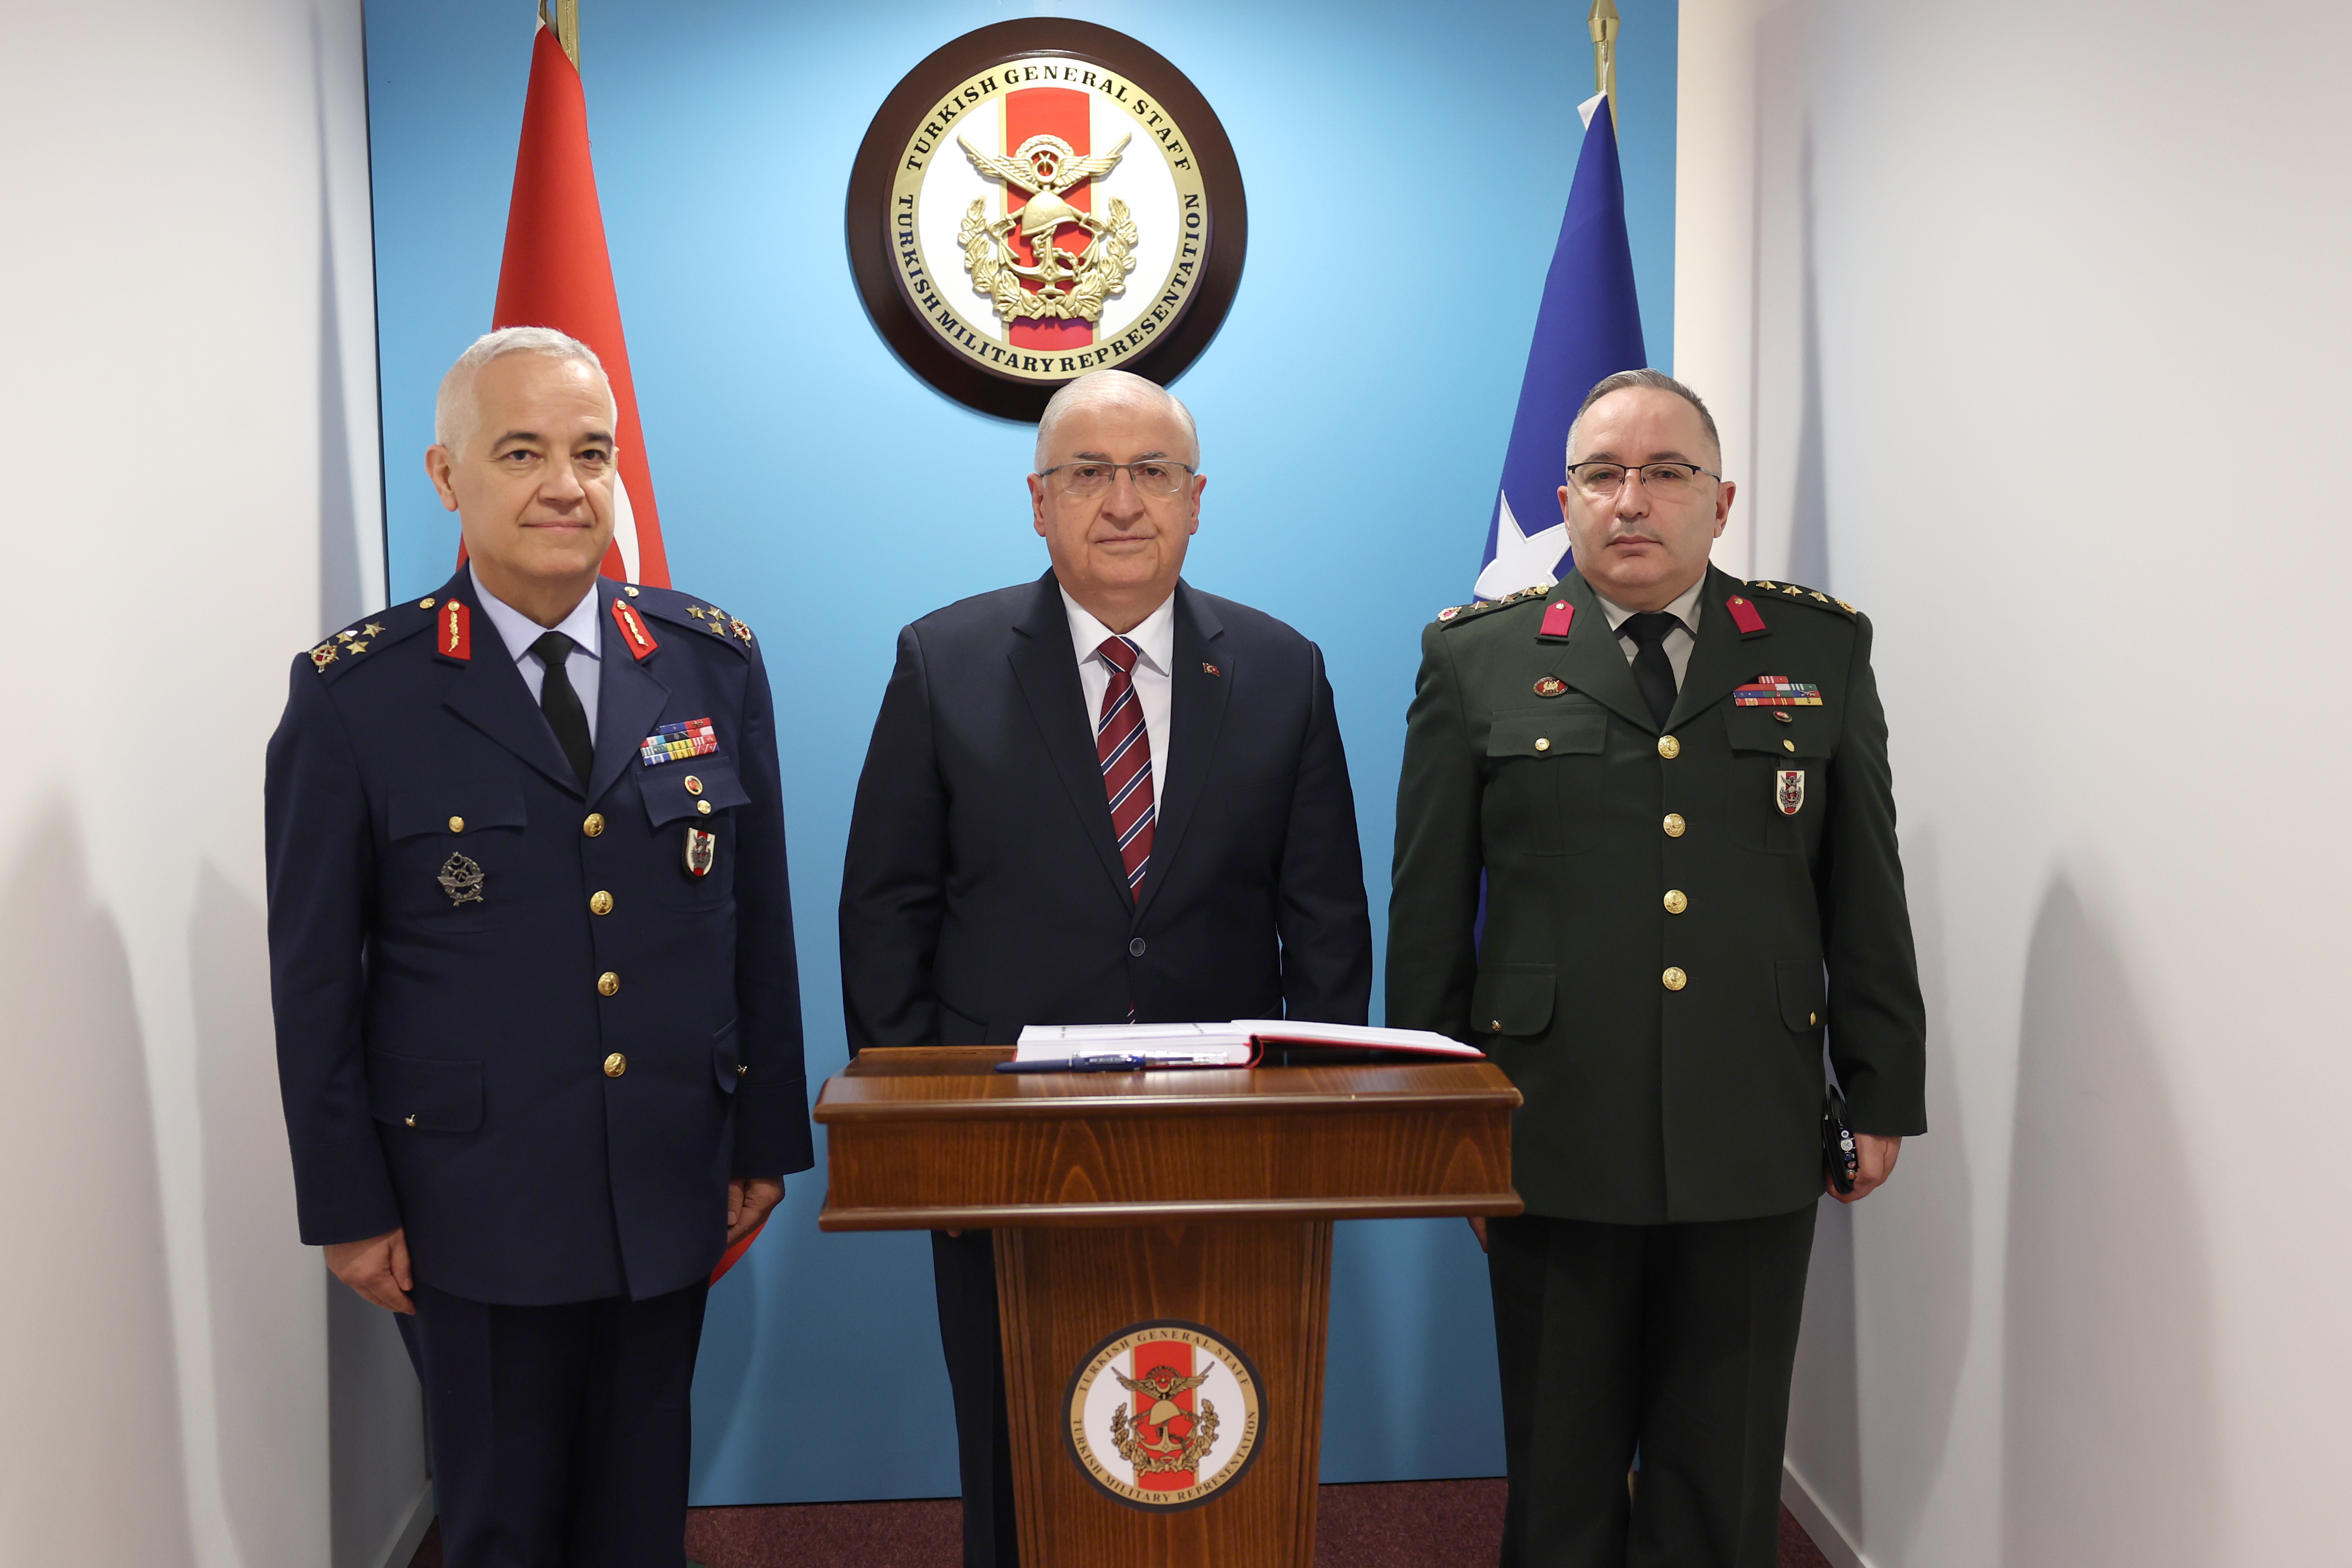 Milli Savunma Bakanı Güler, Brüksel’de temaslarını sürdürüyor